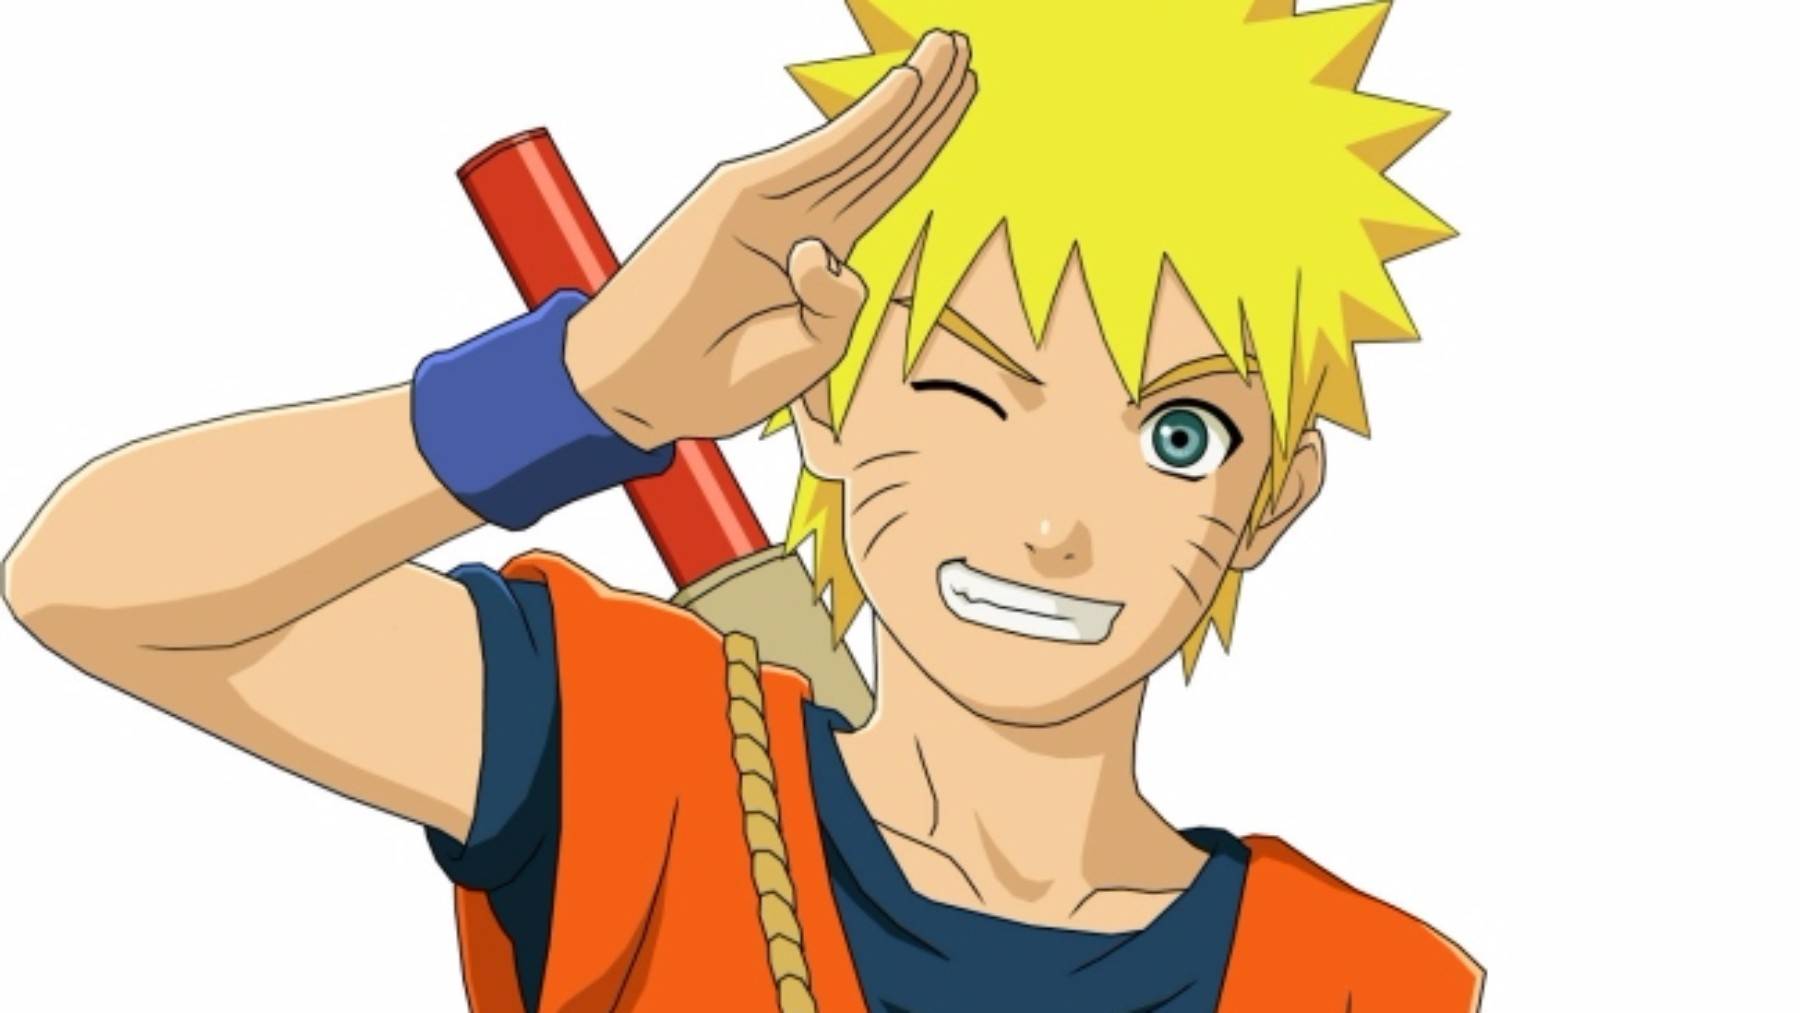 Naruto reclamará el lugar de Dragon Ball como clásico del anime?